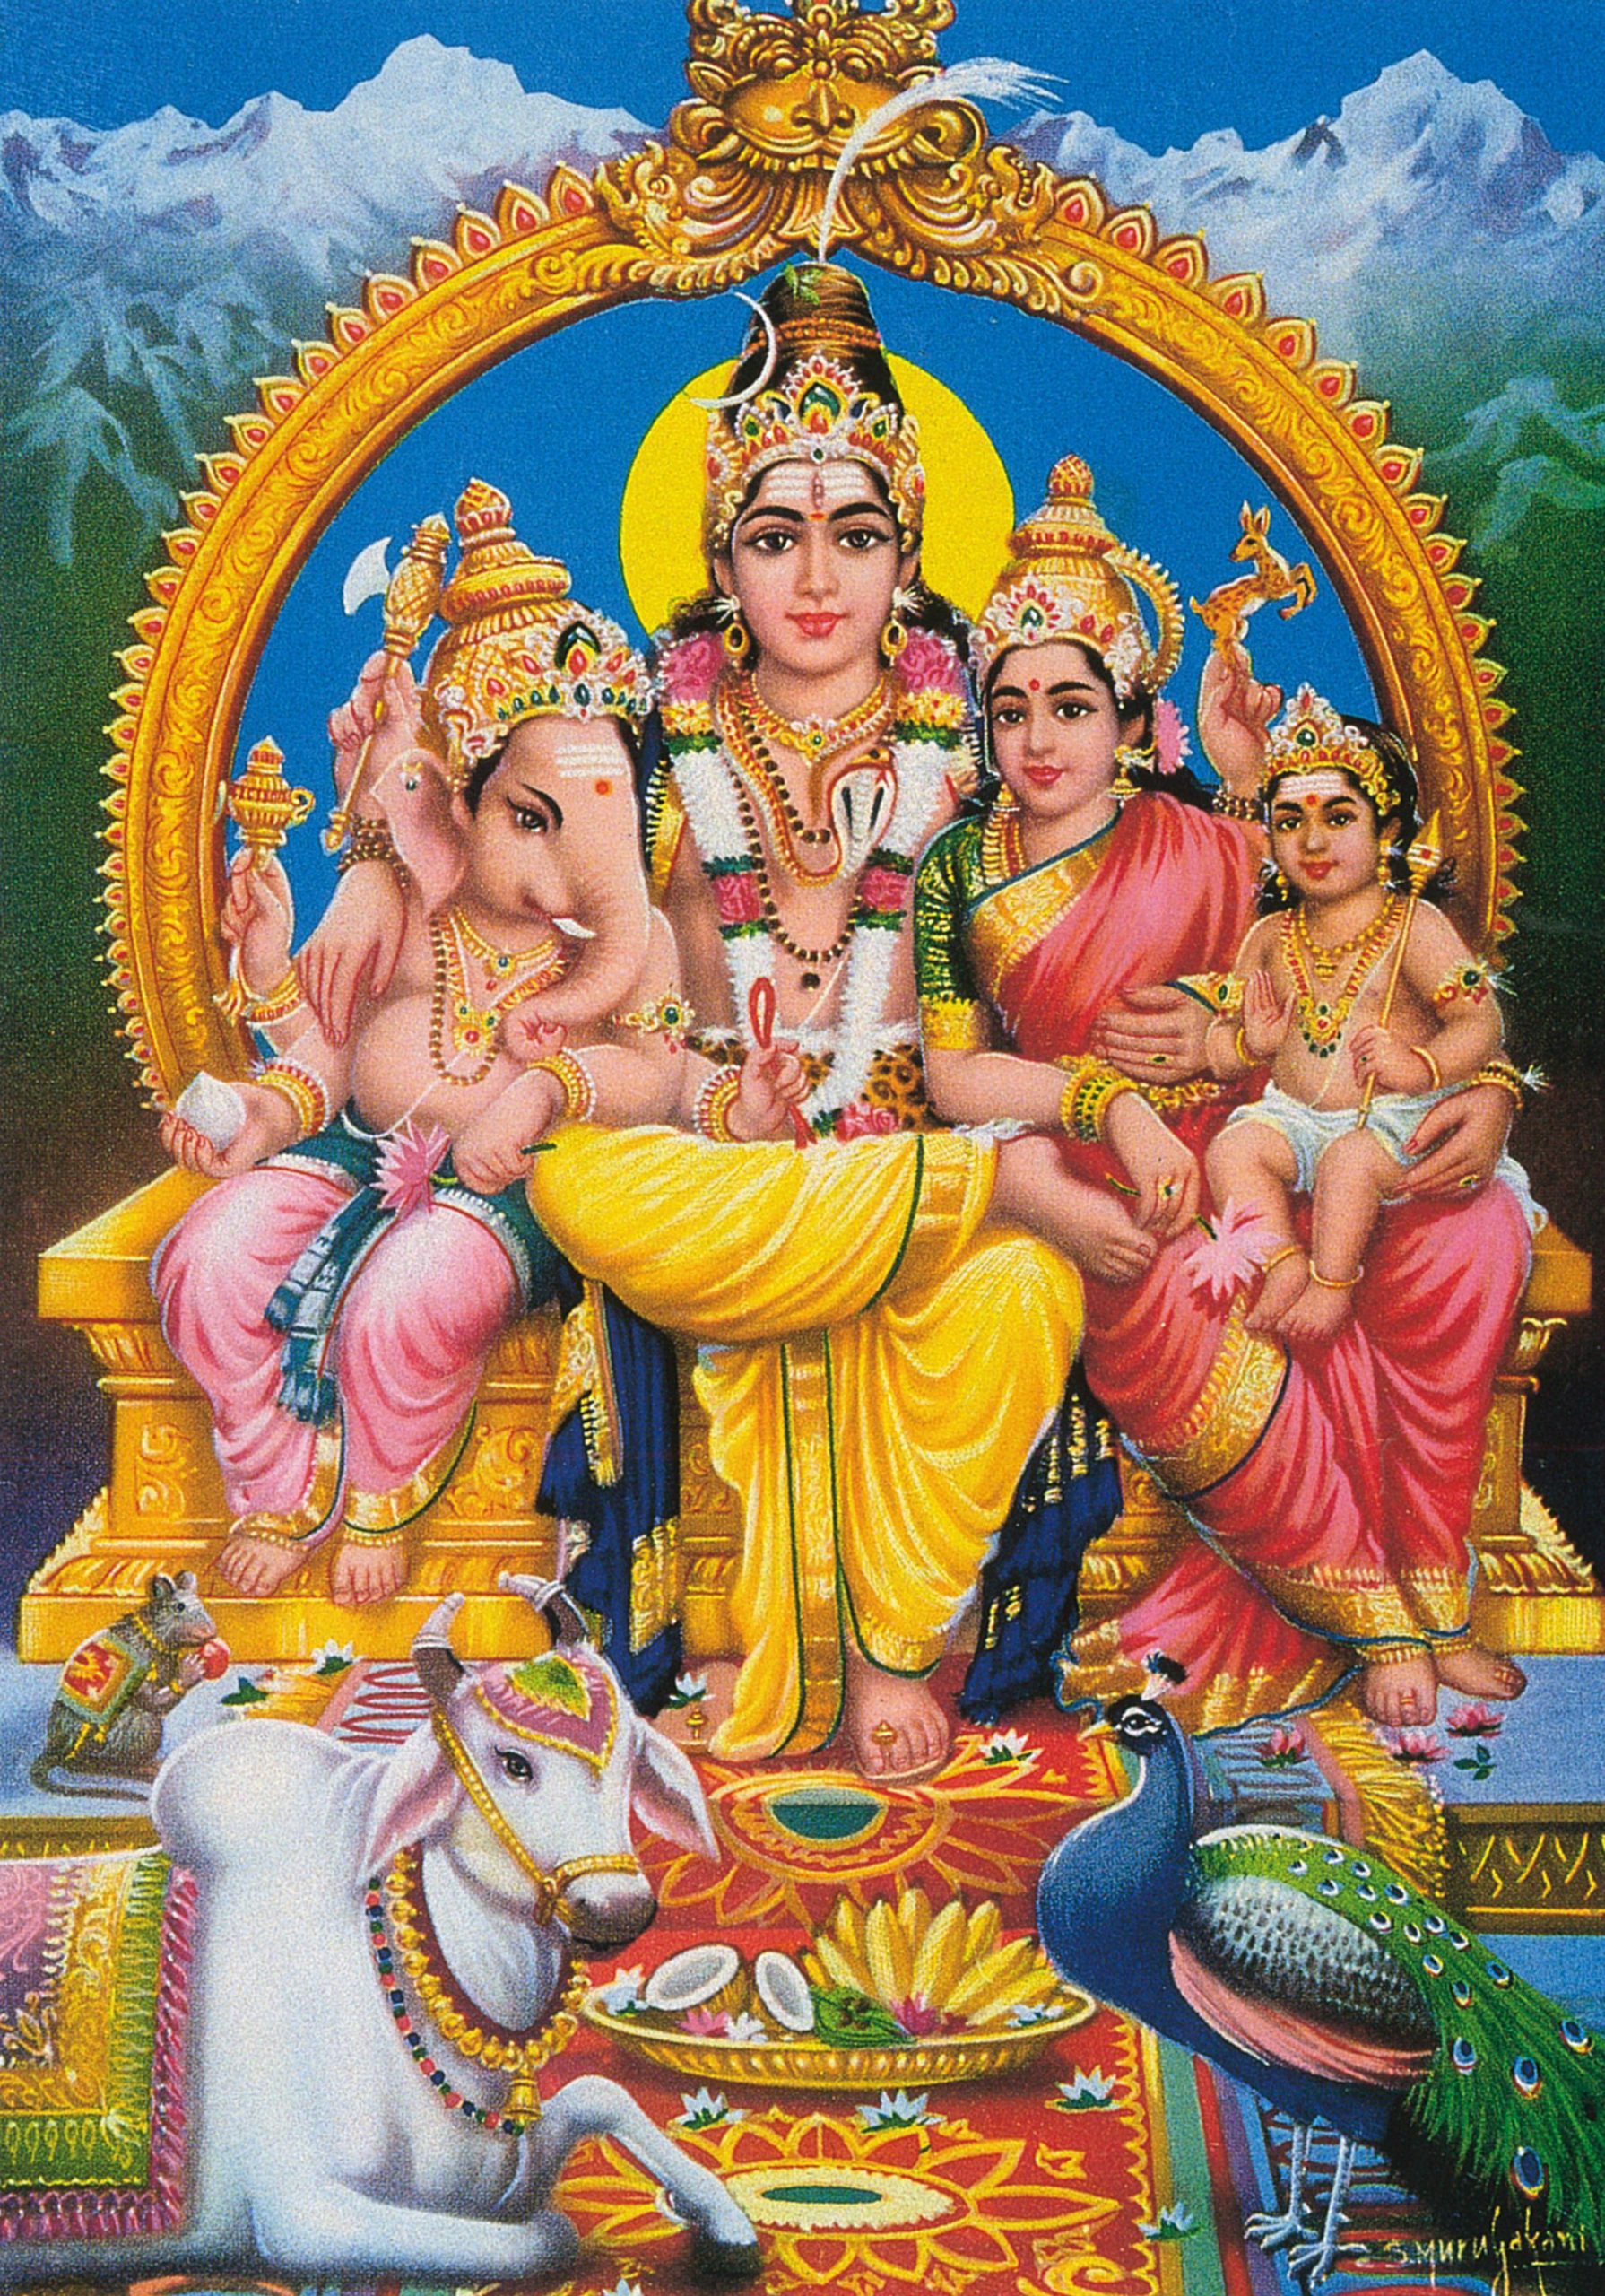 インドの神様 西遊インディア アーカイブス